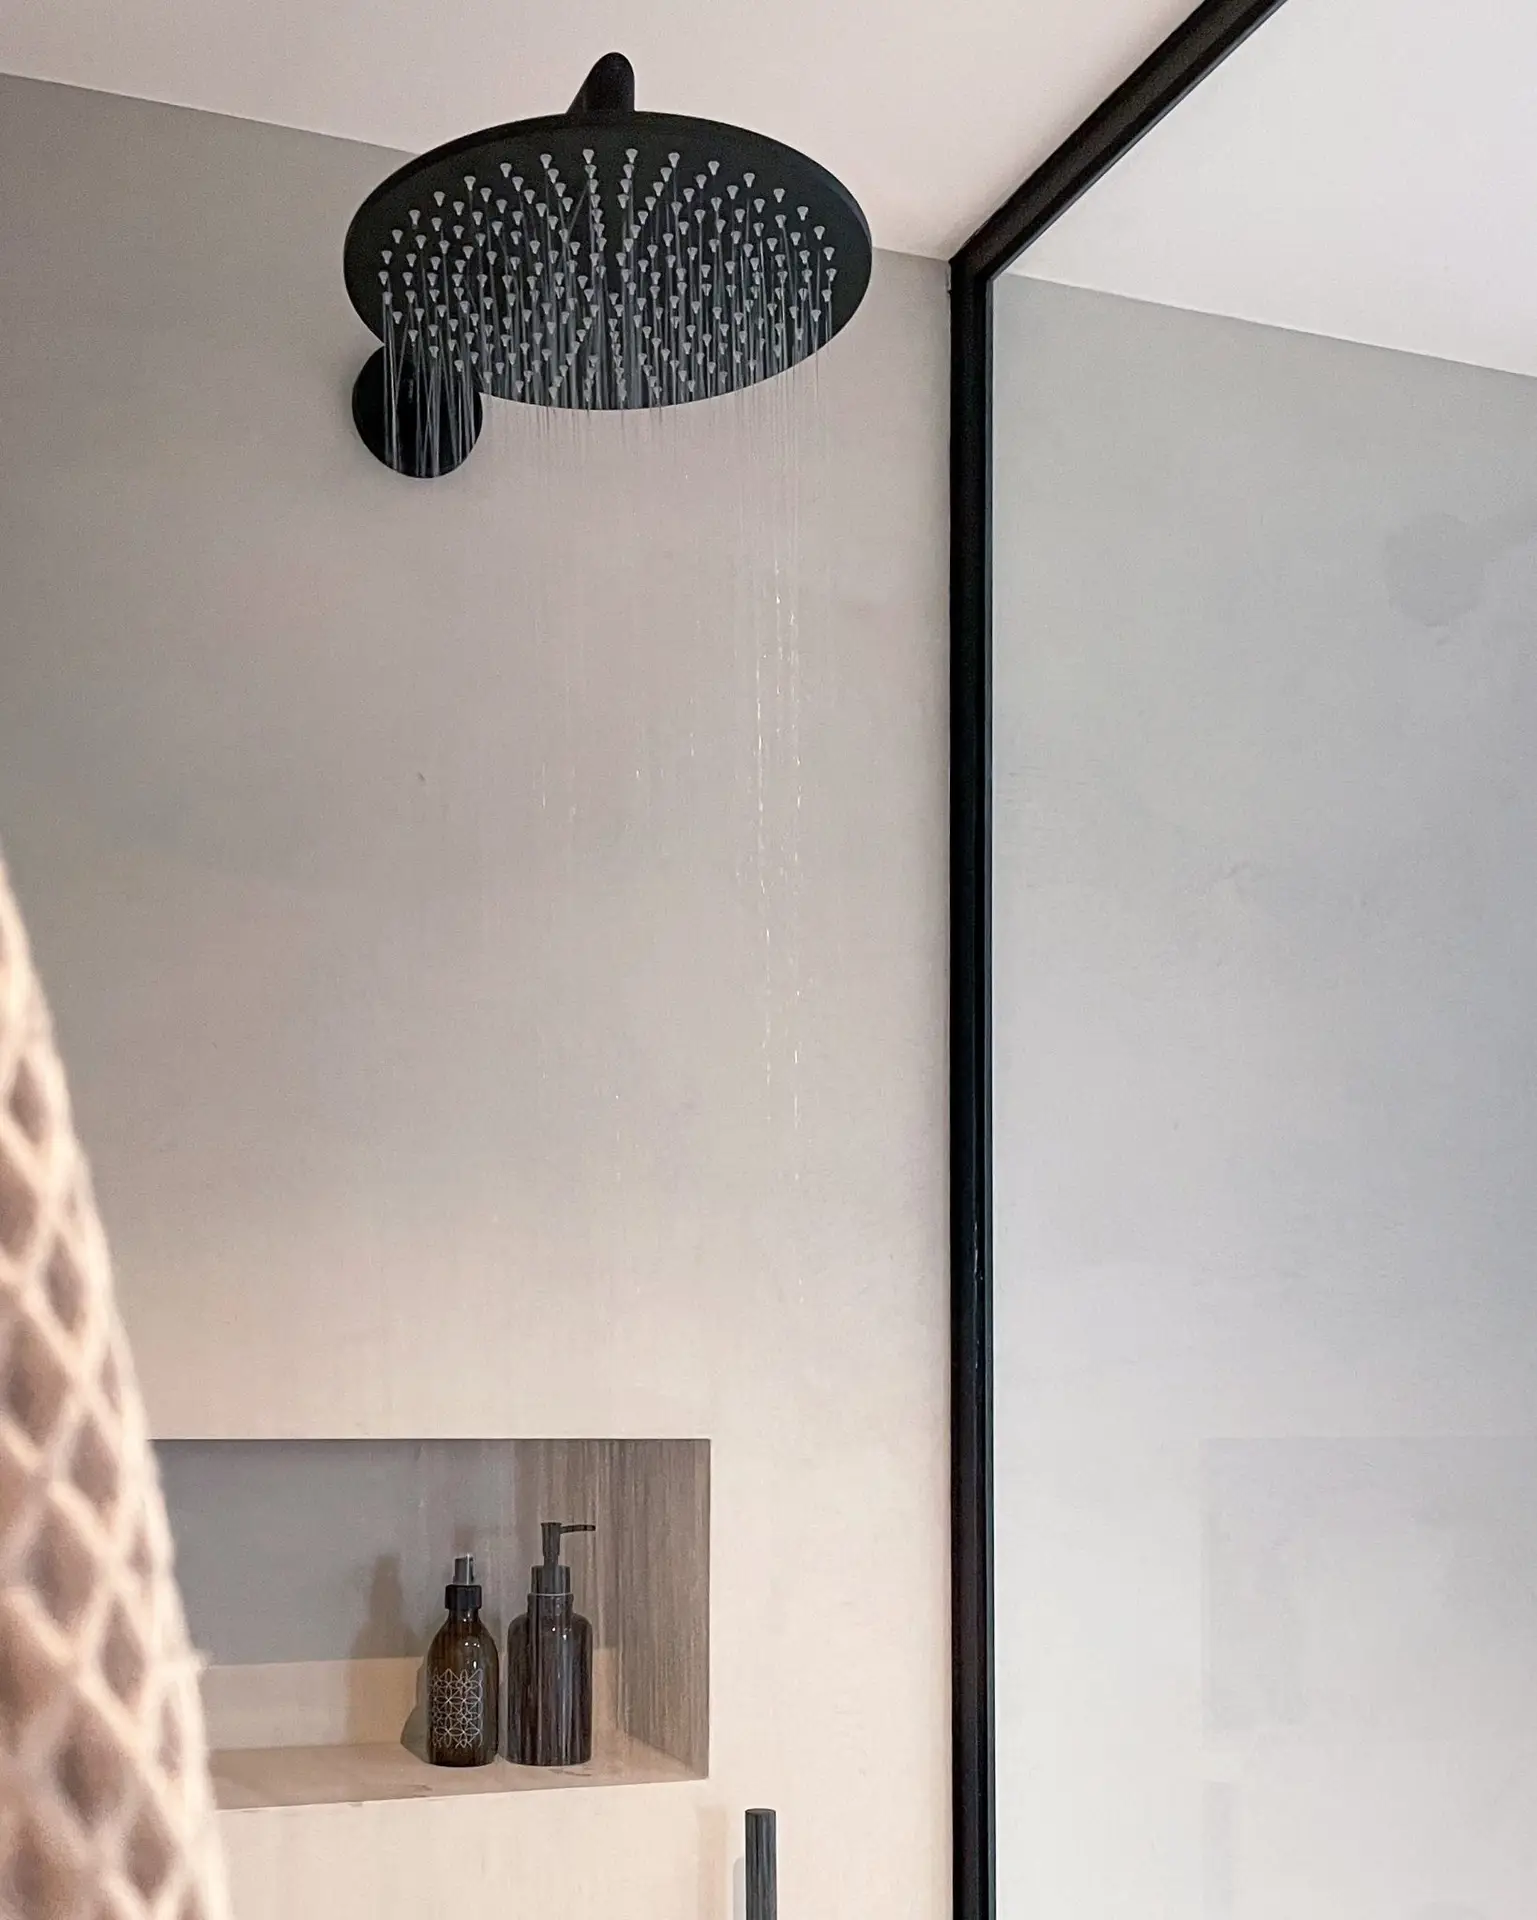 Schwarzer großer Regendusche Duschkopf an einer glattverputzten Wand in Betonoptik. Wasser läuft. Kleine Nische mit zwei braunen Glaspumpspendern. Schwarz eingefasste Duschwandabtrennung aus Glas.